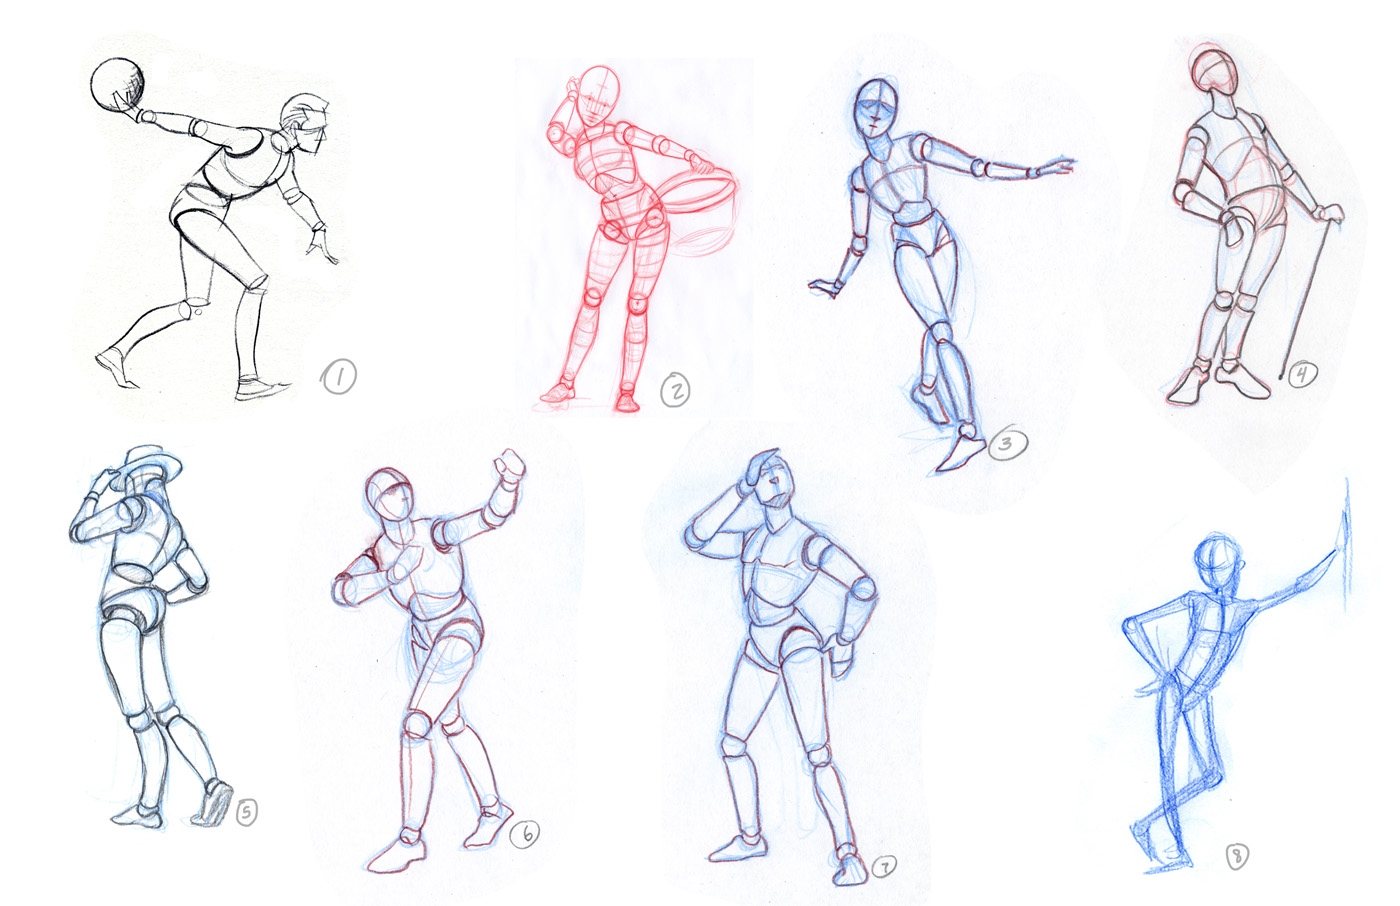 Изобразить человека в движении. Фигура человека в движении. Рисование человека в движении. Рисование фигуры человека в движении. Поэтапное рисование человека в движении.